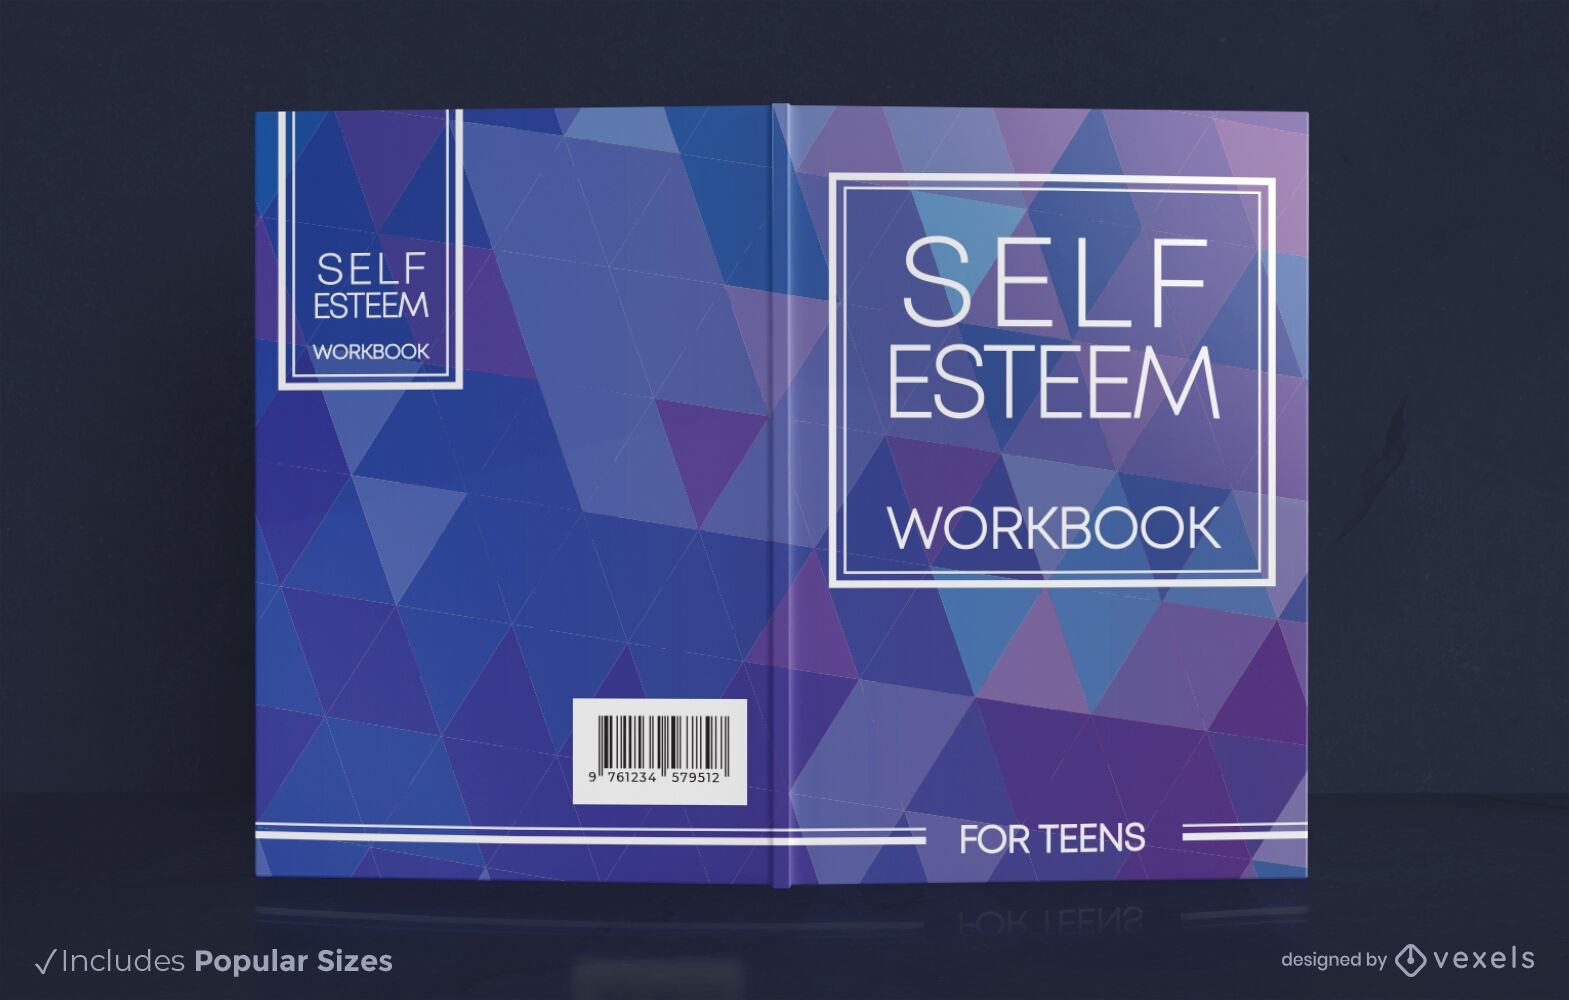 Self esteem workbook cover design KDP